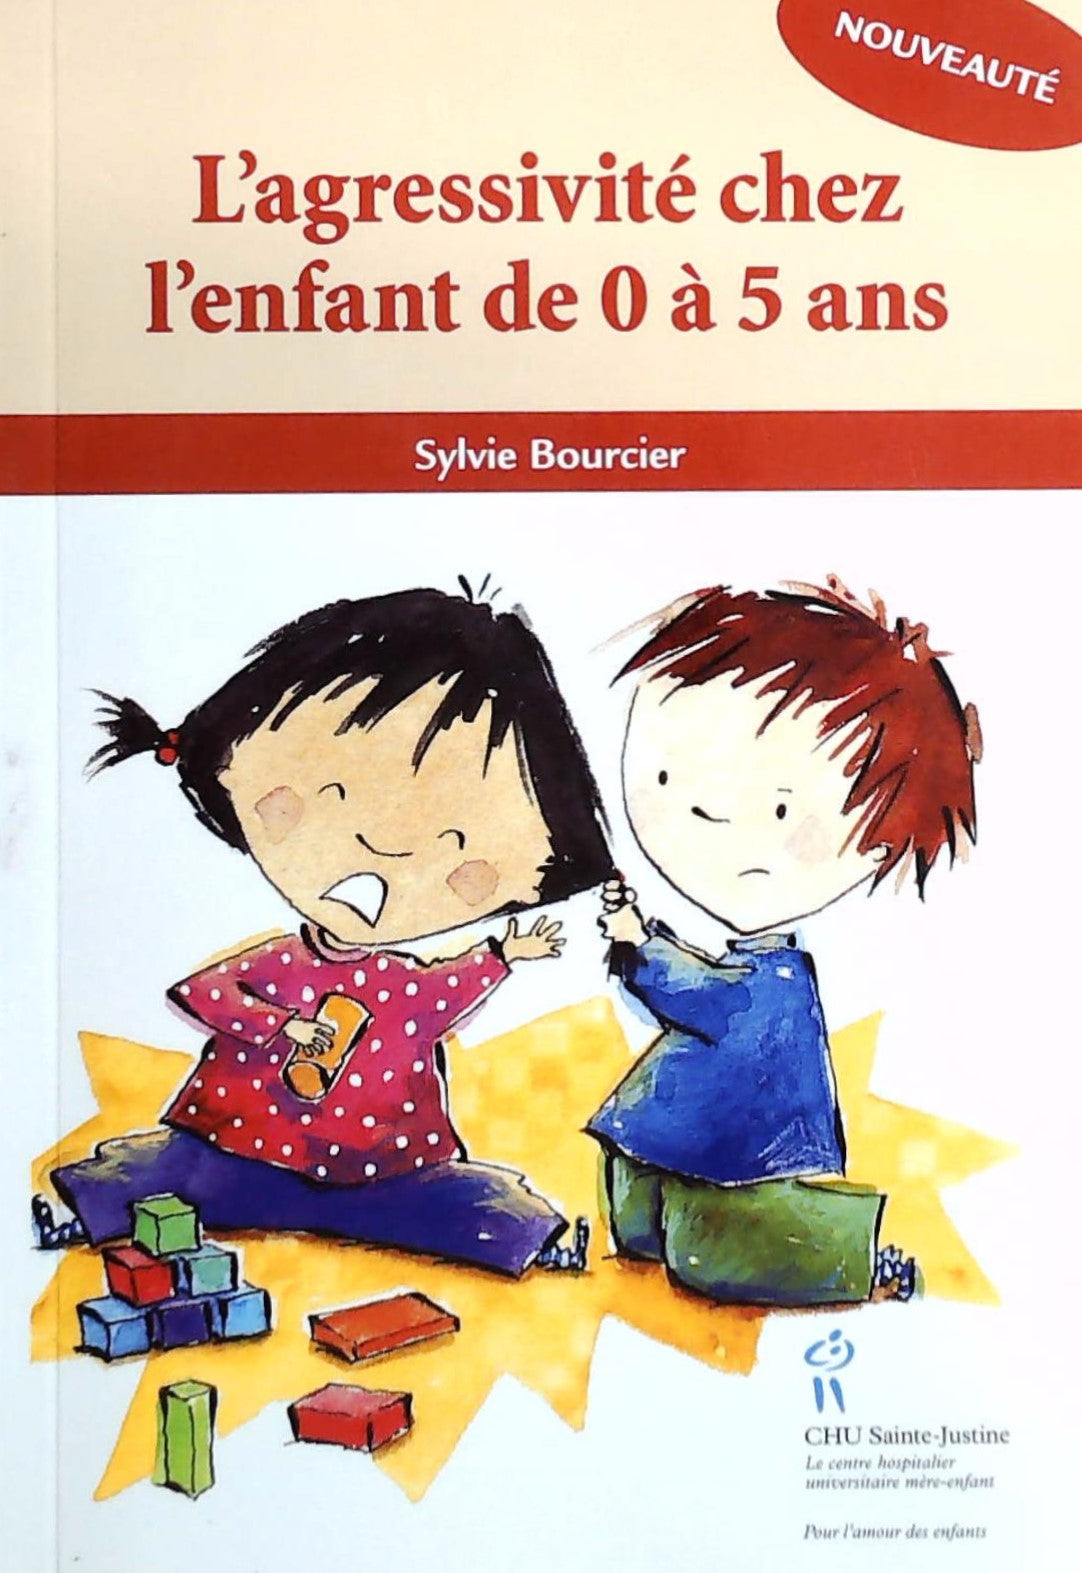 Livre ISBN 2896191259 L'agressivité chez l'enfant de 0 à 5 ans (Sylvie Bourcier)